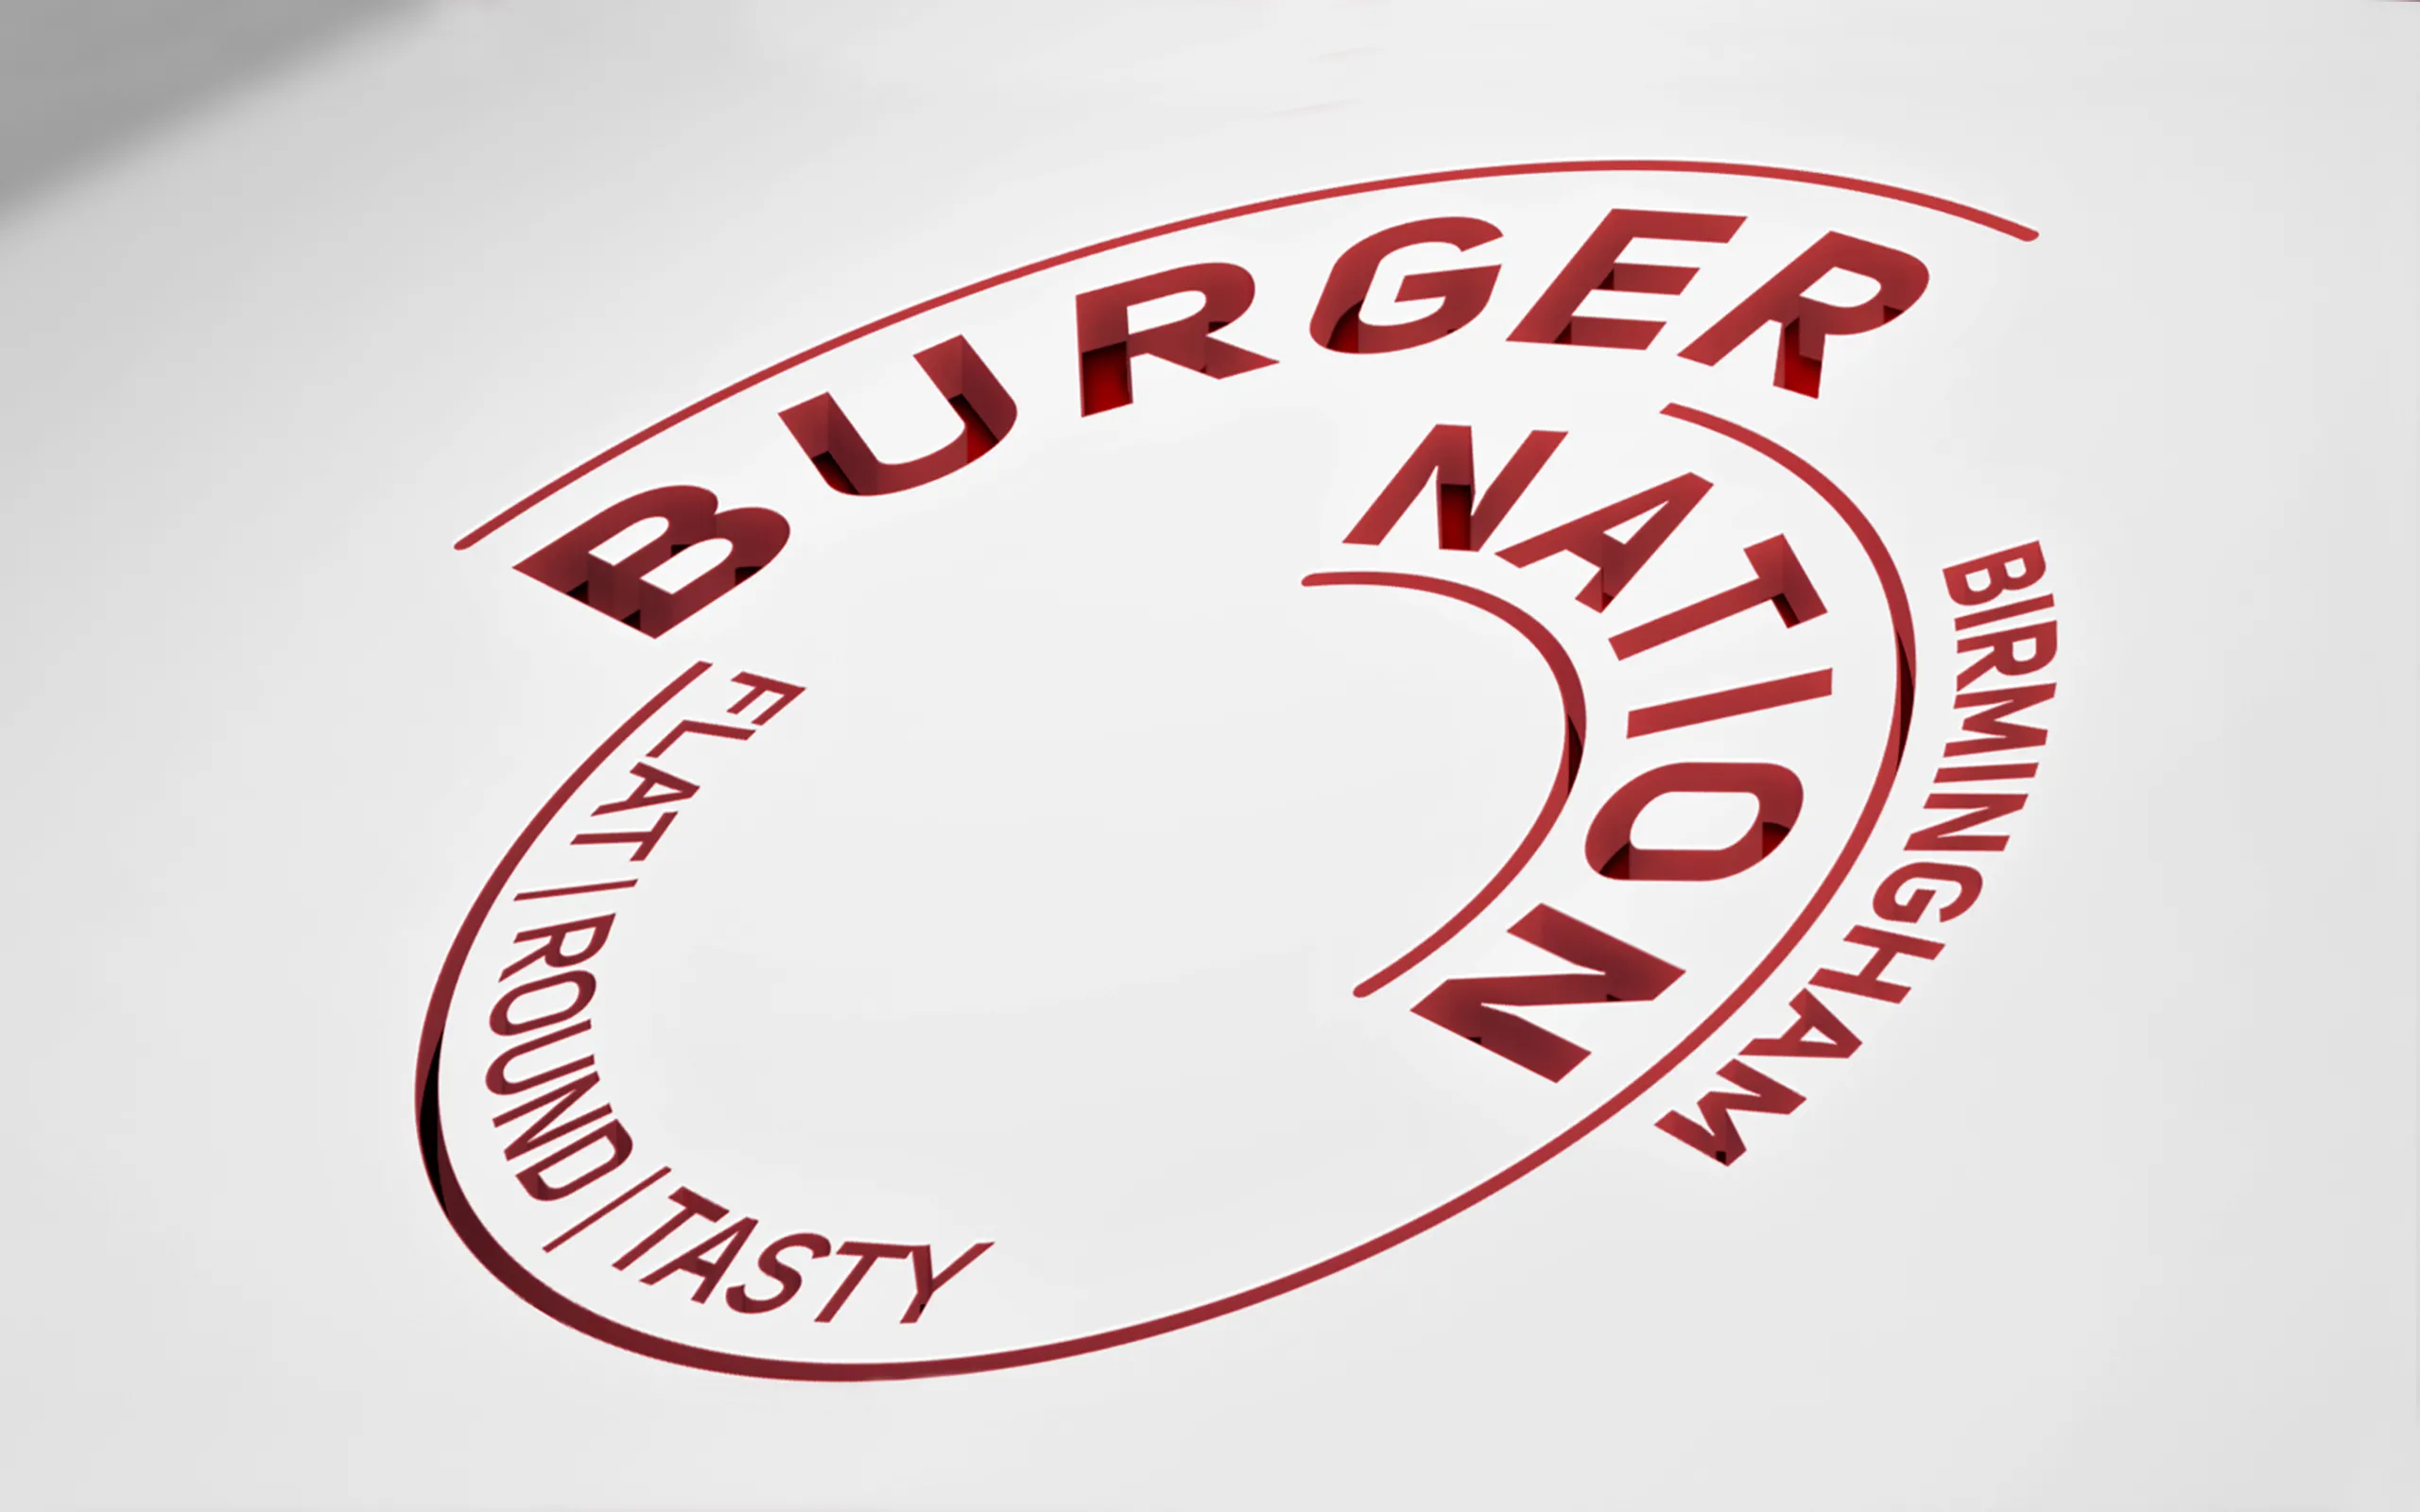 burger restaurant branding, restaurant signage Nonfacture design Birmingham